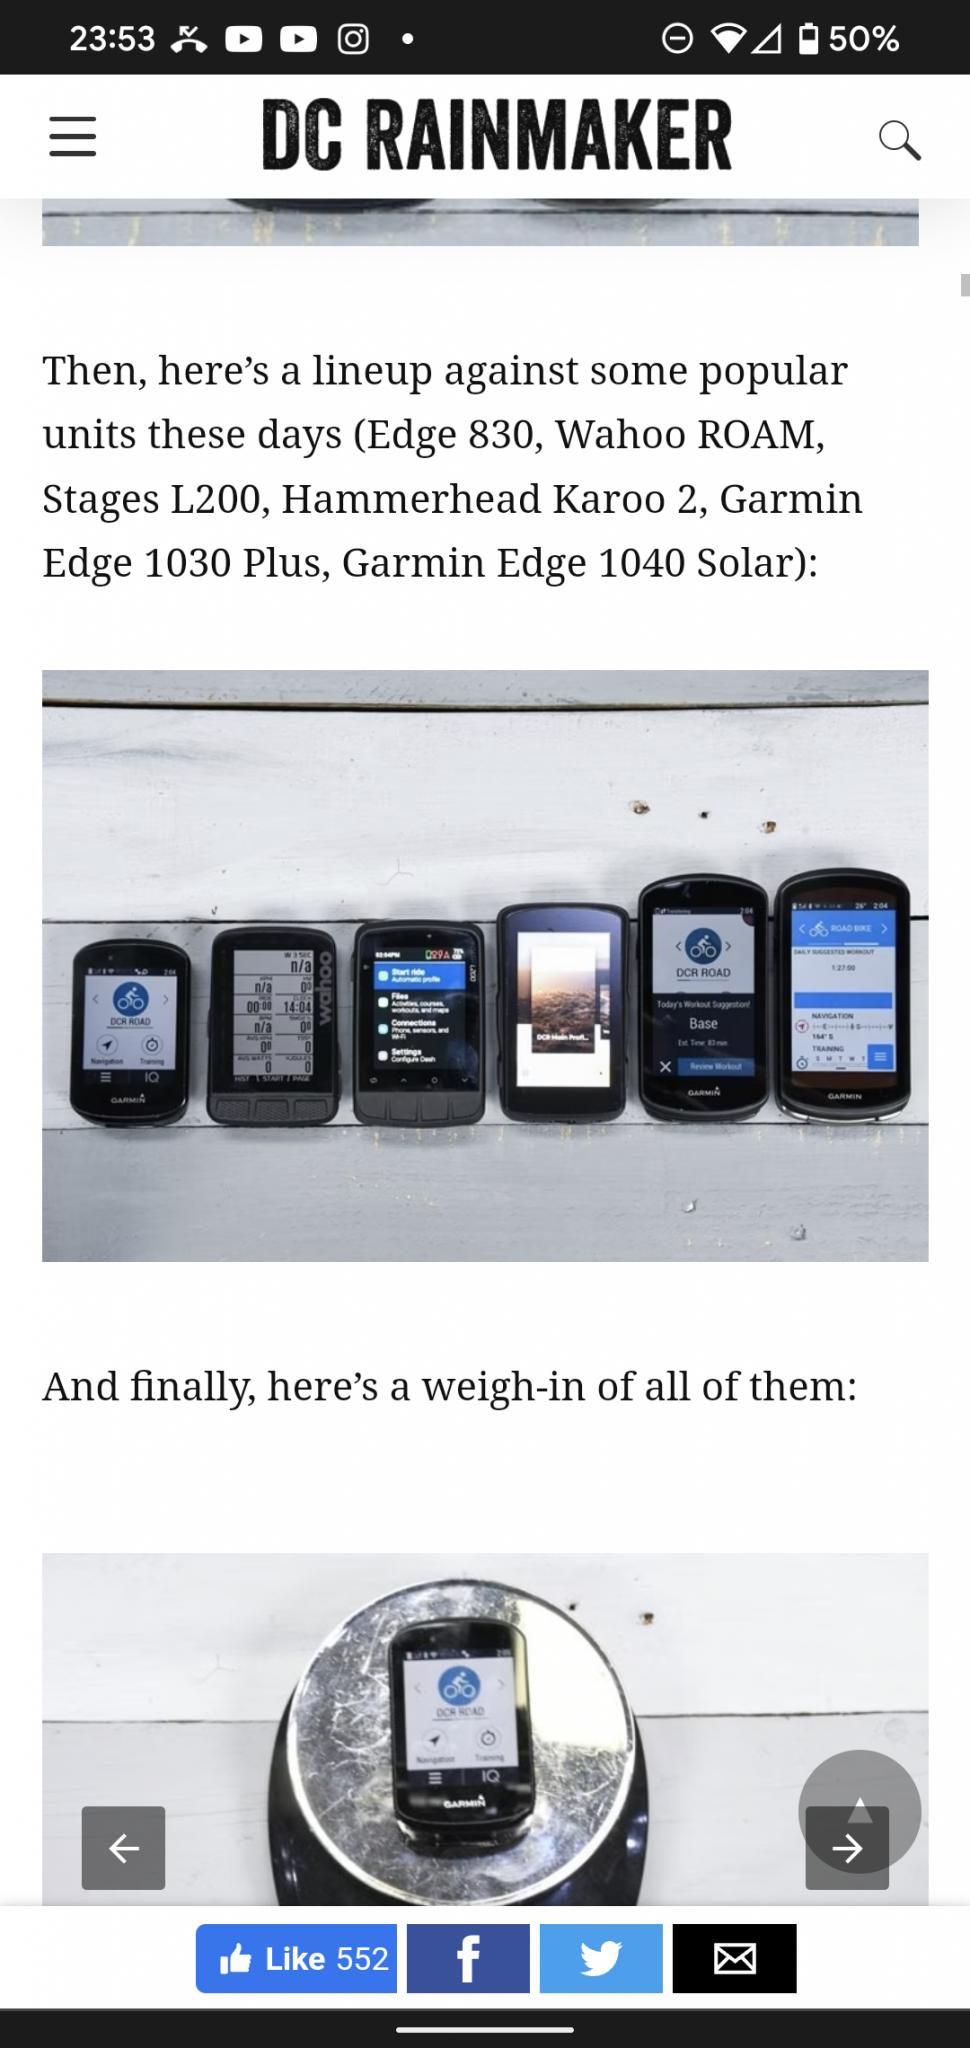 Garmin Introduces the Edge 1040 Solar, IMB